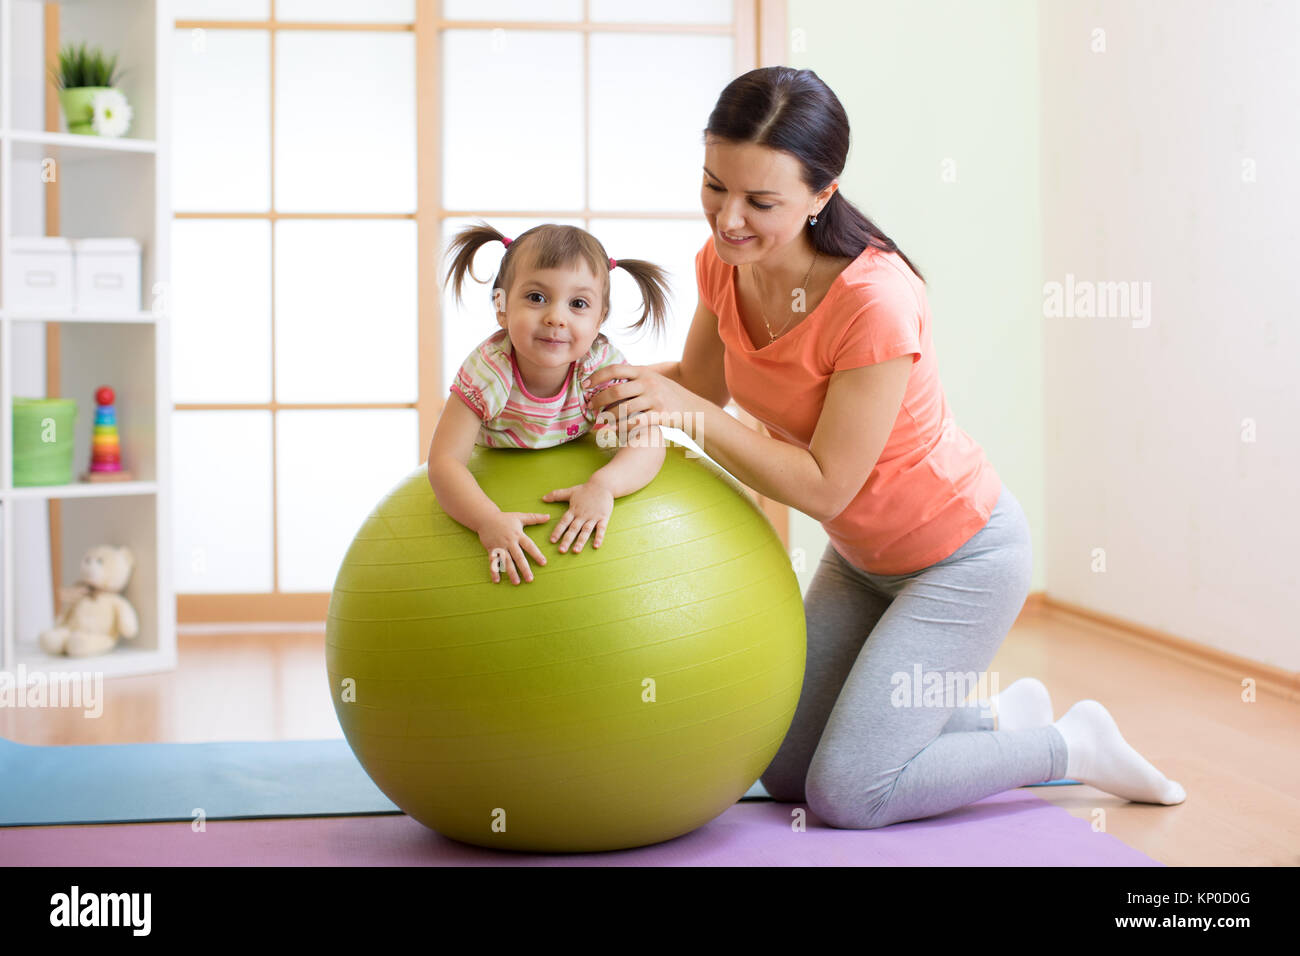 Mère avec childdoing exercices avec ballon de gymnastique à la maison. Concept de prendre soin de la santé du bébé. Banque D'Images